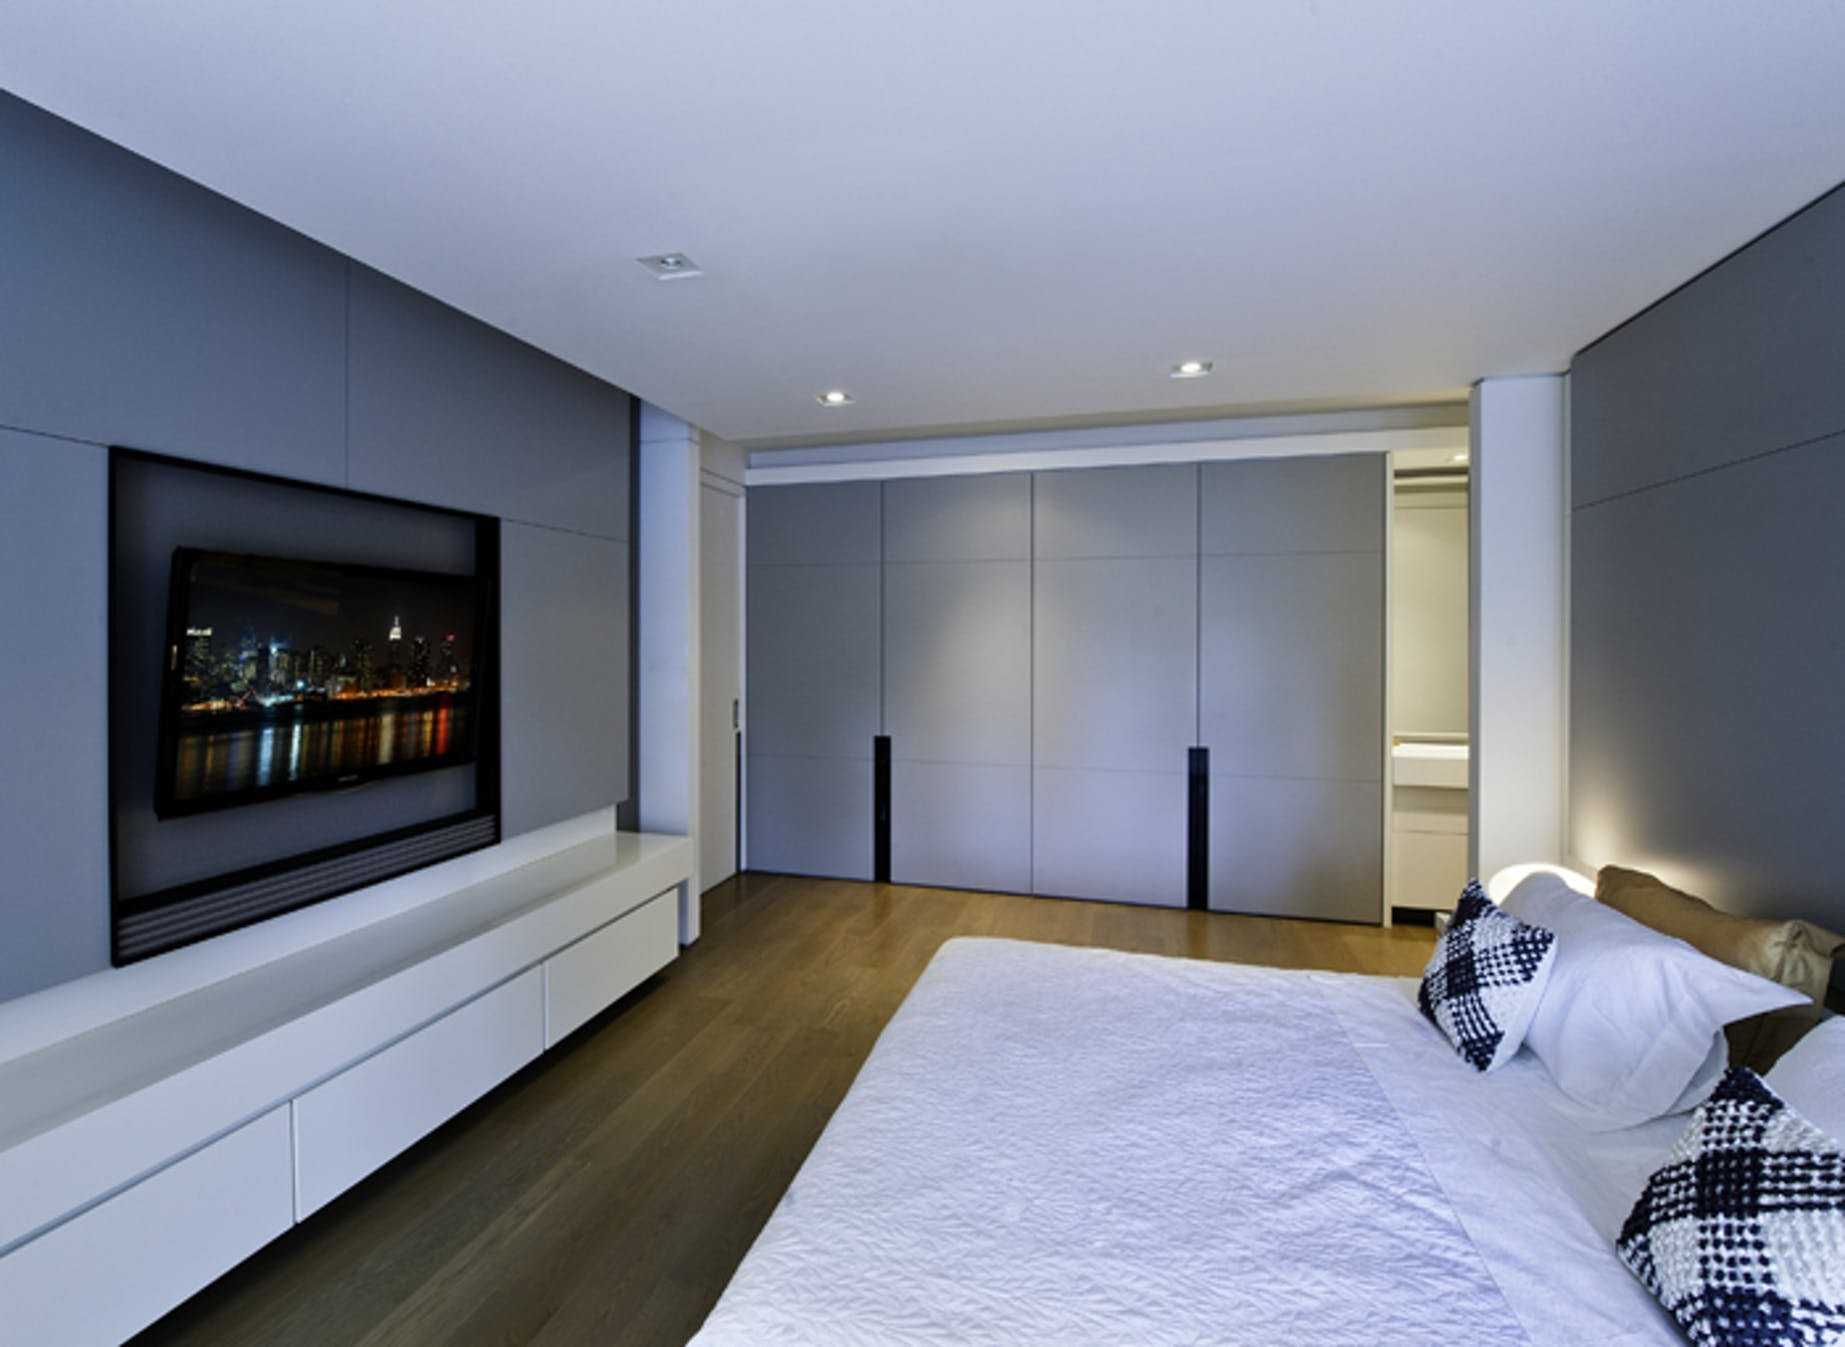 Телевизор в спальне: плюсы и минусы телевизора в спальне. выбор варианта расположения. пошаговая инструкция по установке телевизора на стену (фото + видео)